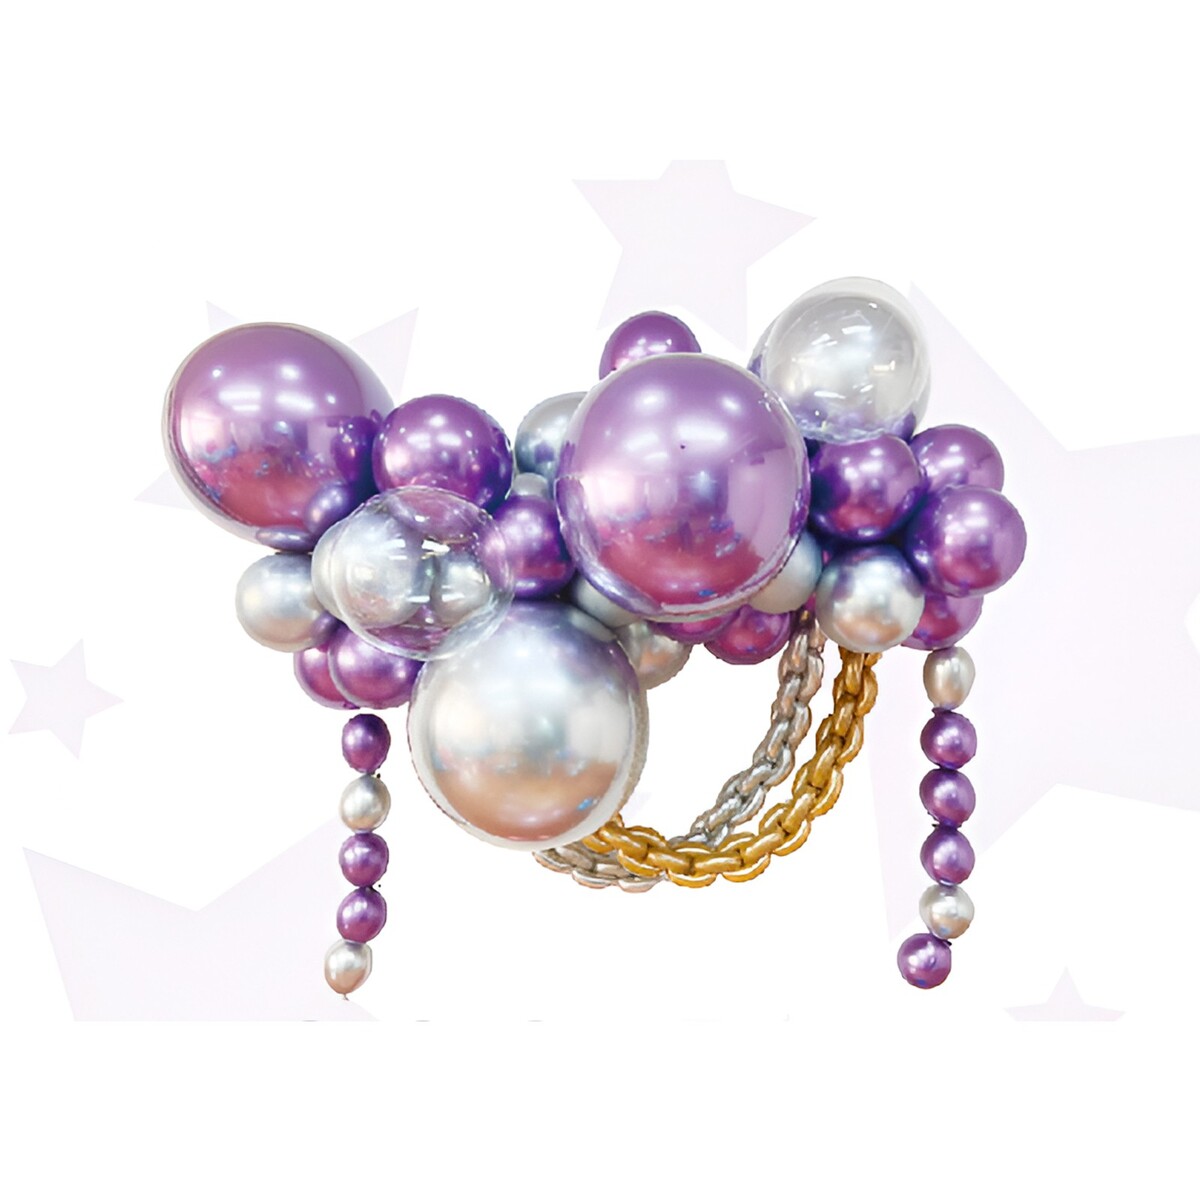 Набор для создания композиций из воздушных шаров, набор 52 шт., фиолетовый, серебро bondibon набор для создания украшений браслеты с шарами вв4892